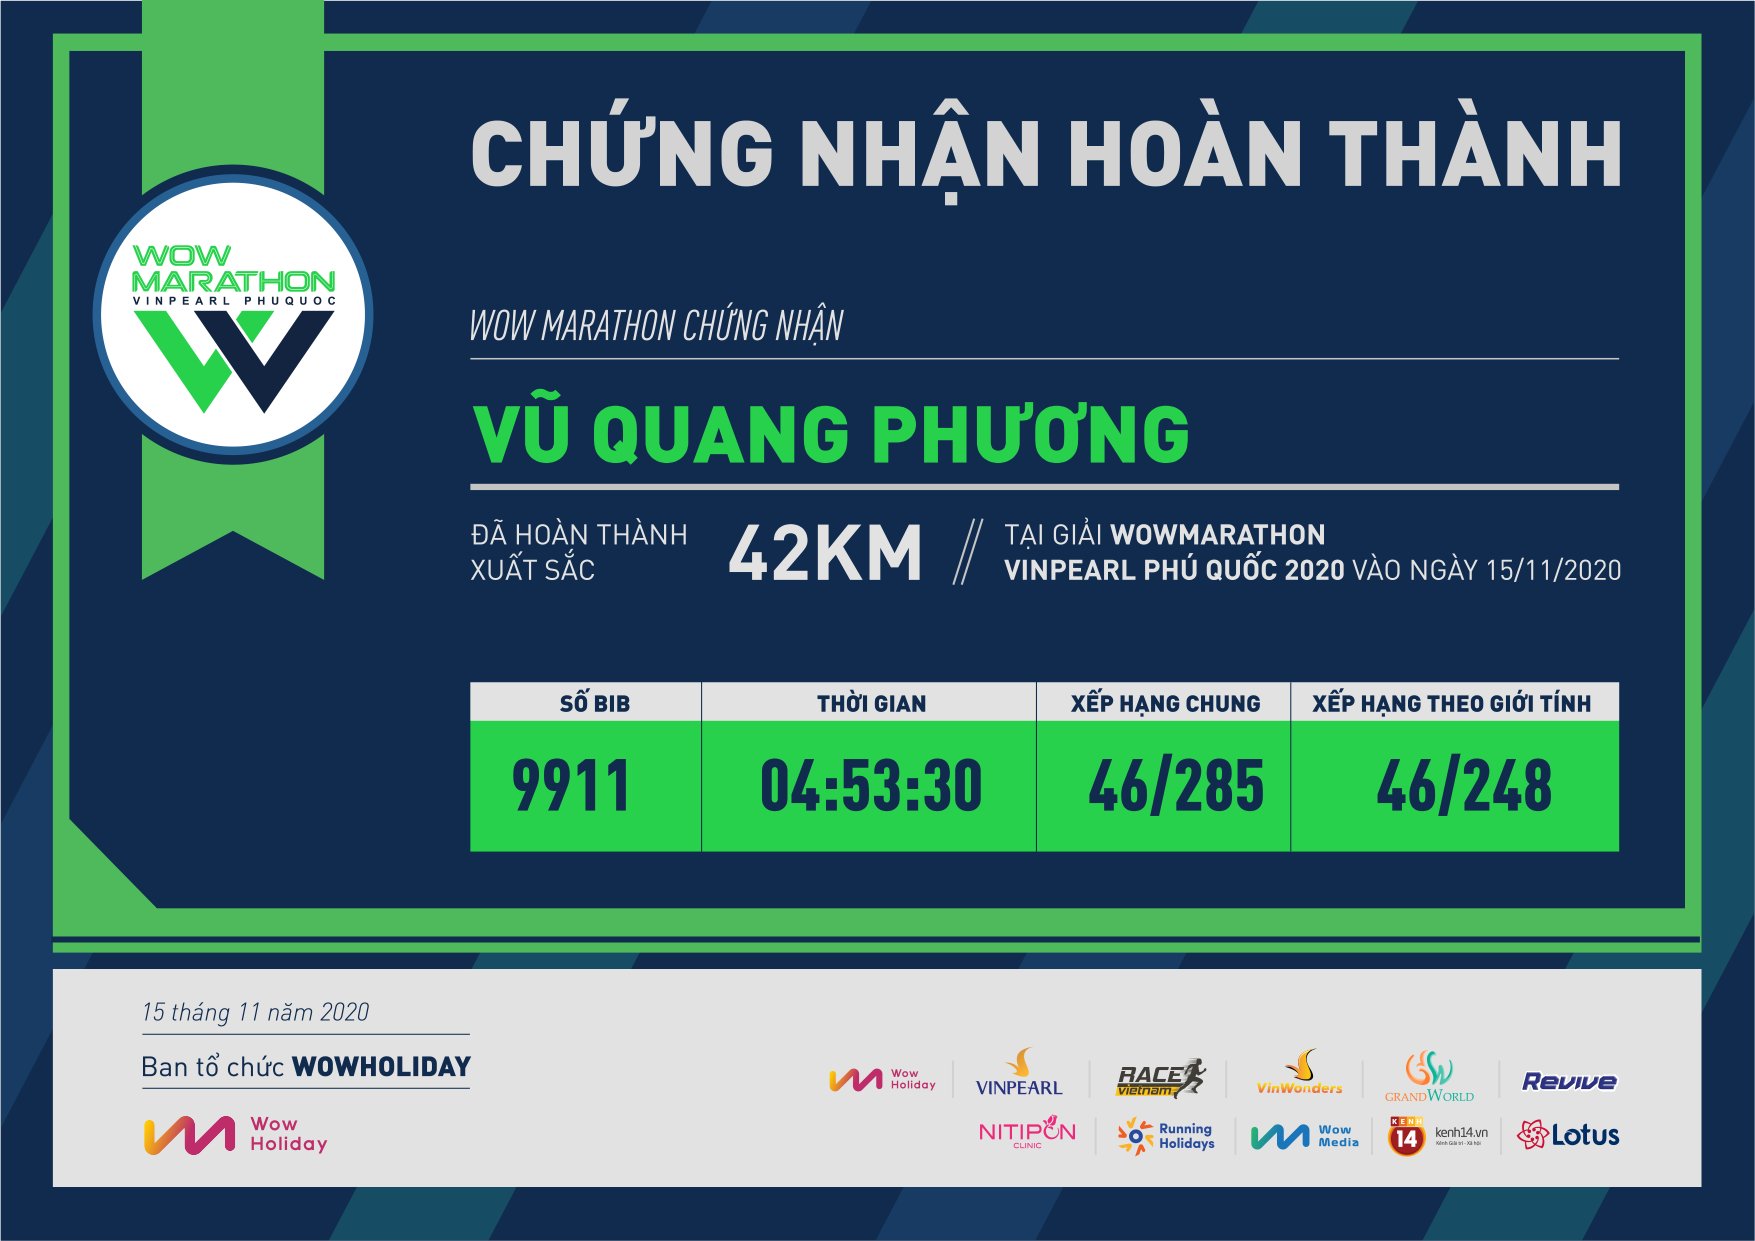 9911 - Vũ Quang Phương